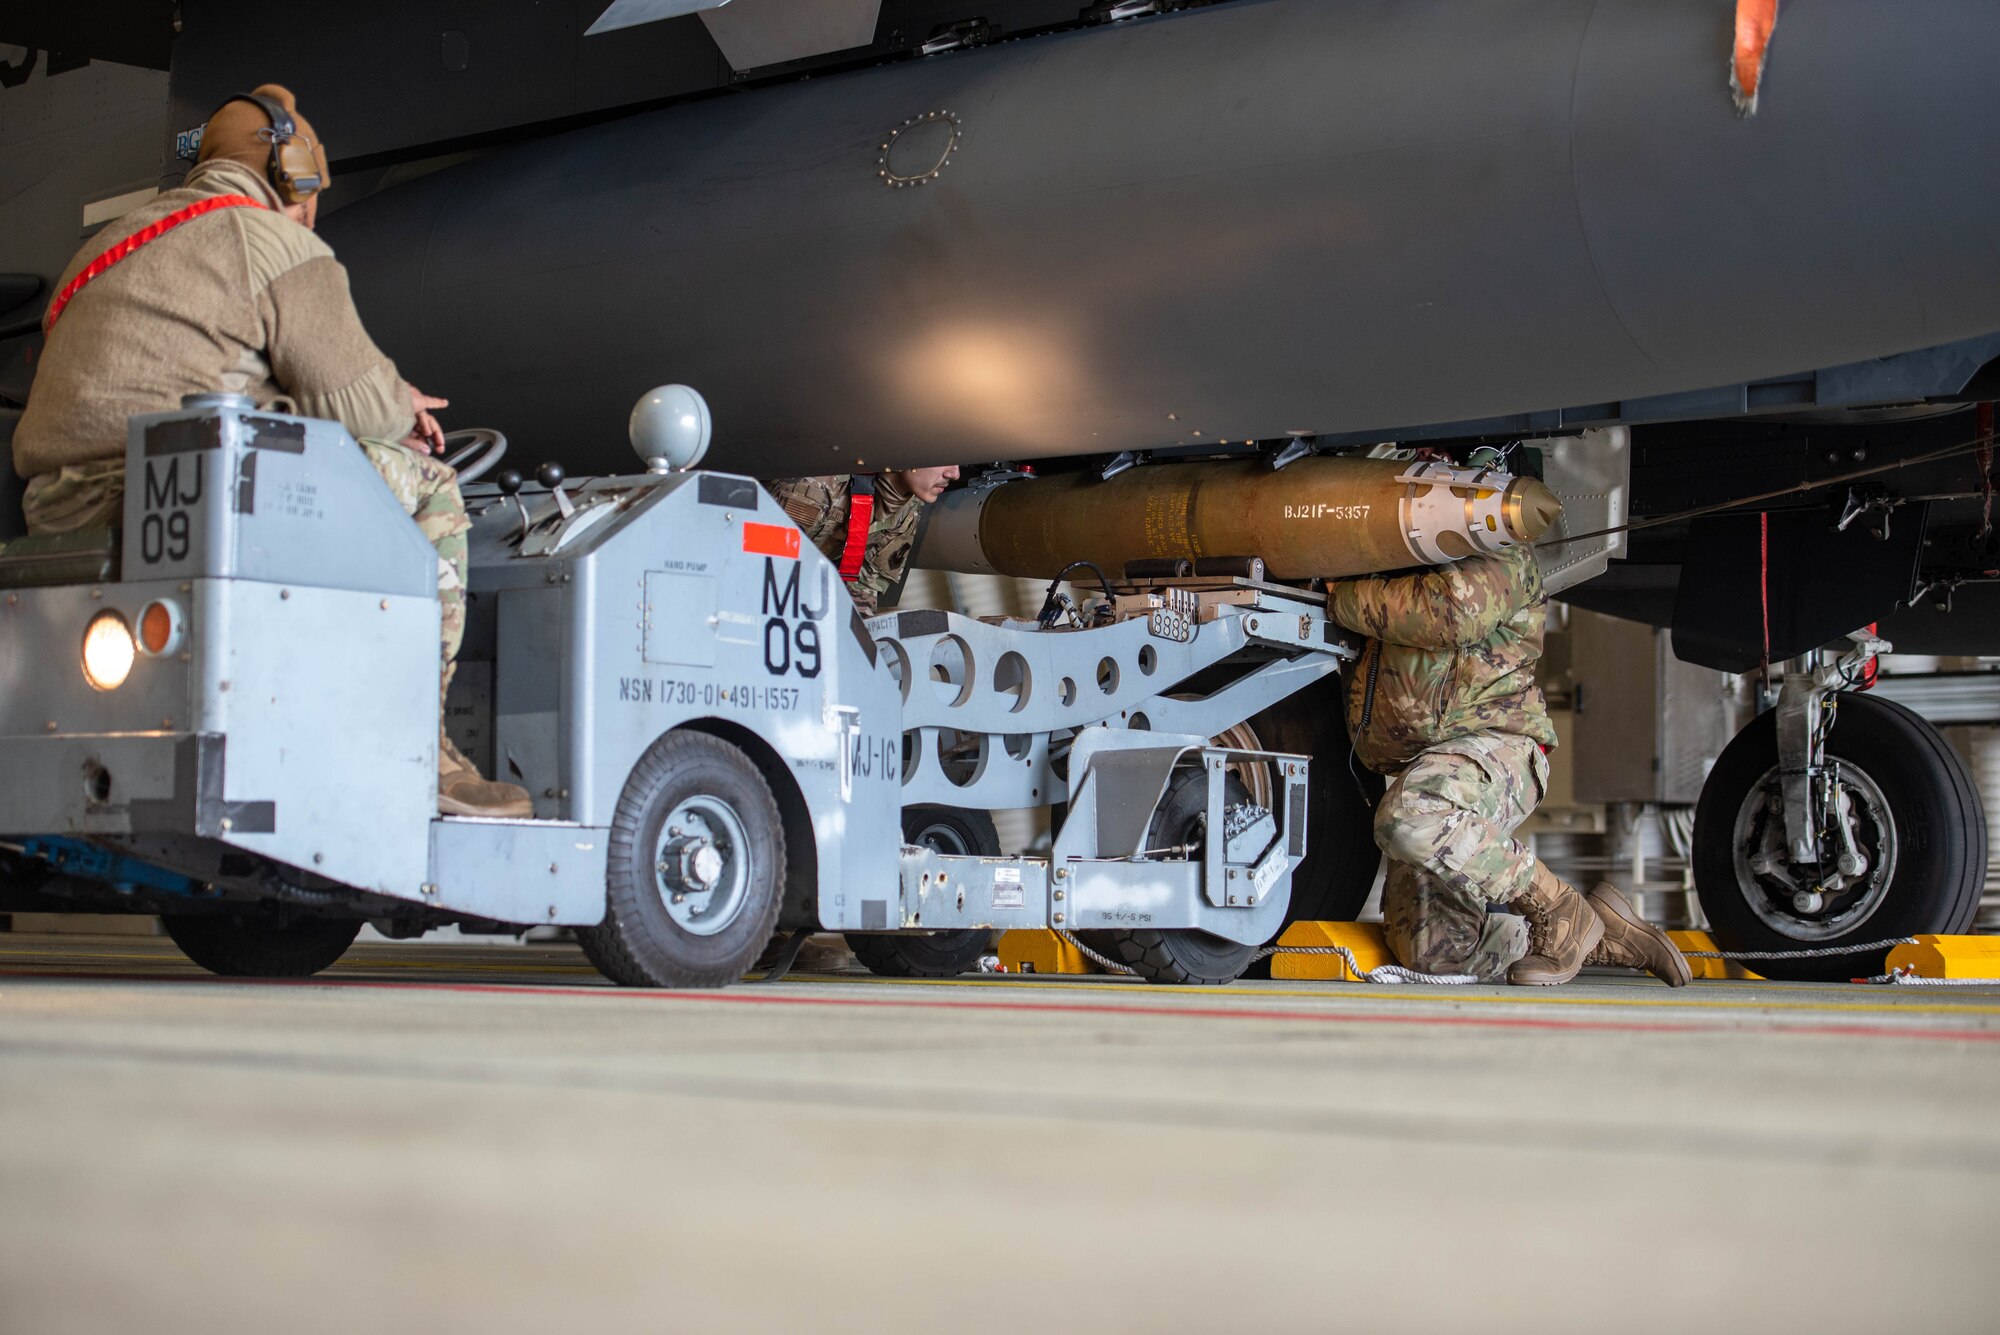 Airmen load munitions onto an aircraft.